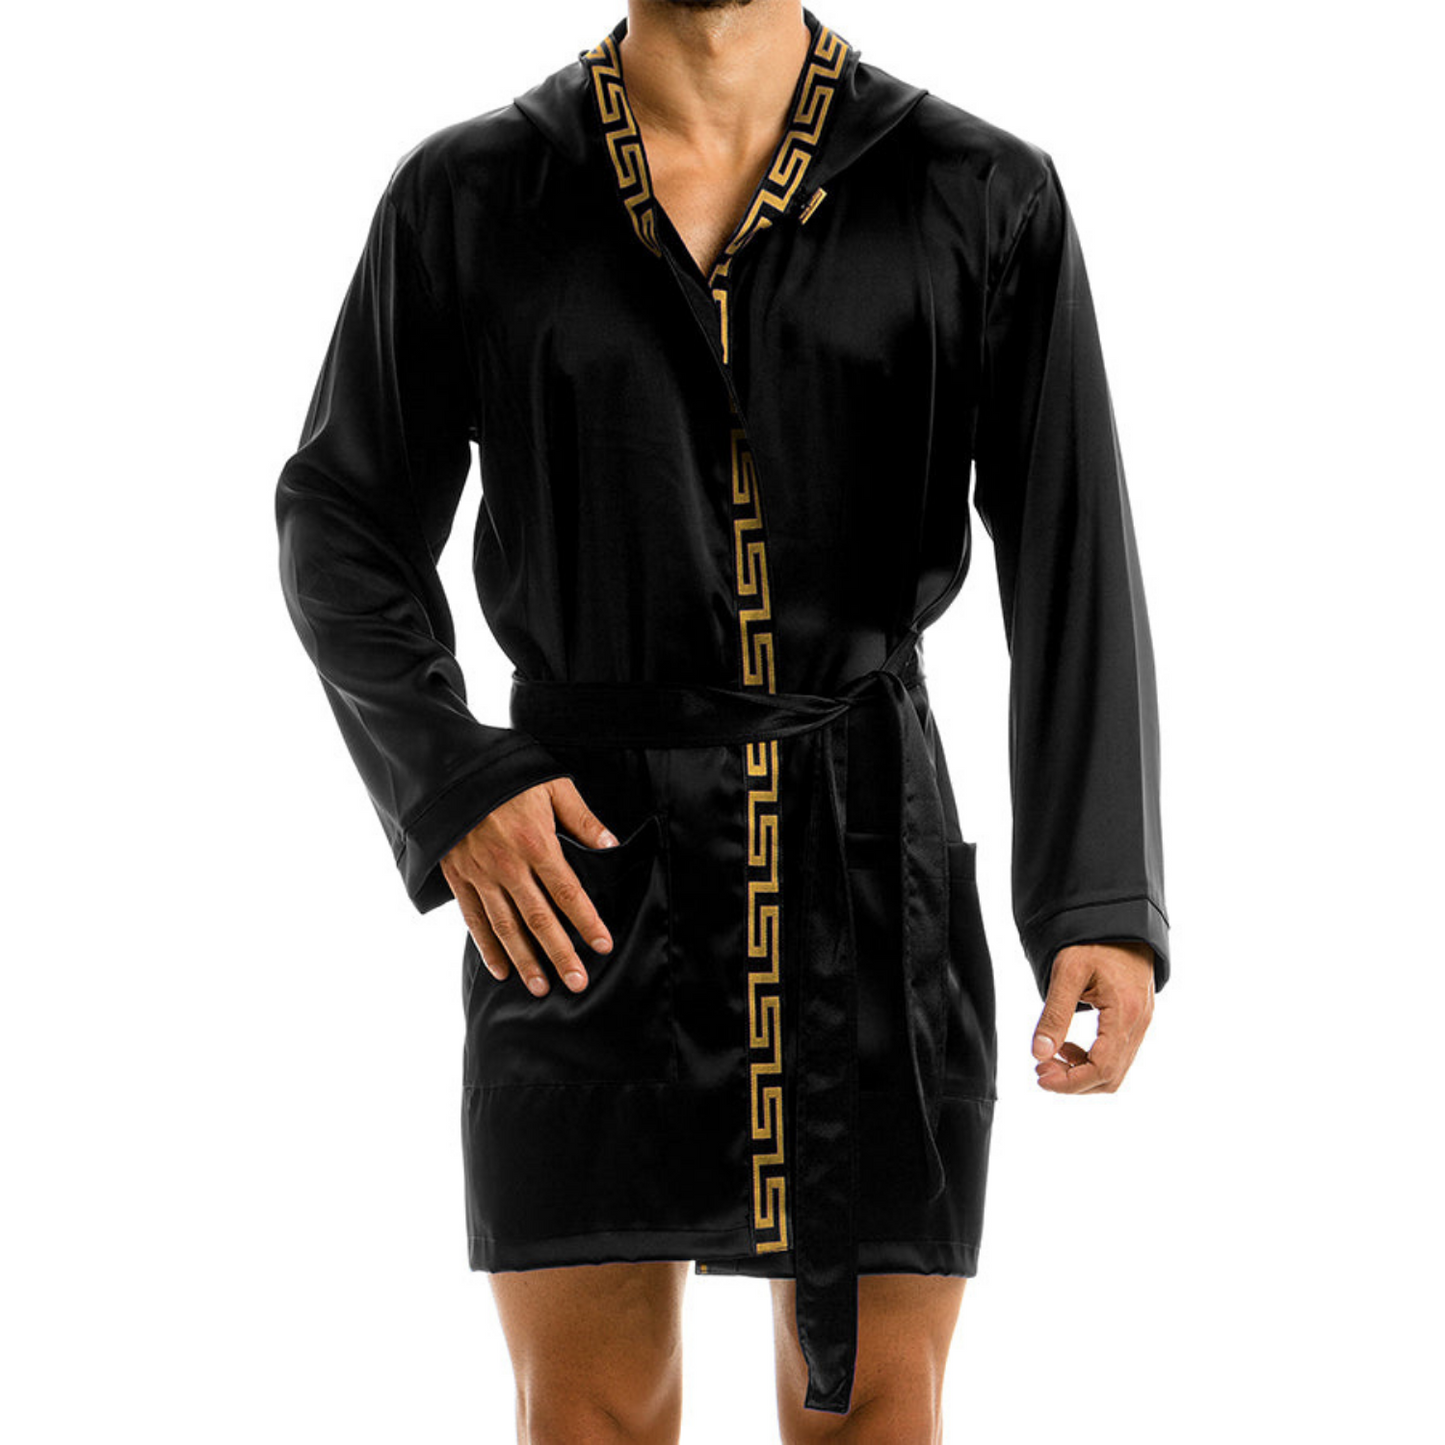 Luxe zwarte heren badjas met meanderpatroon, ontworpen door het Griekse modehuis Modus Vivendi en te koop bij Flavourez.